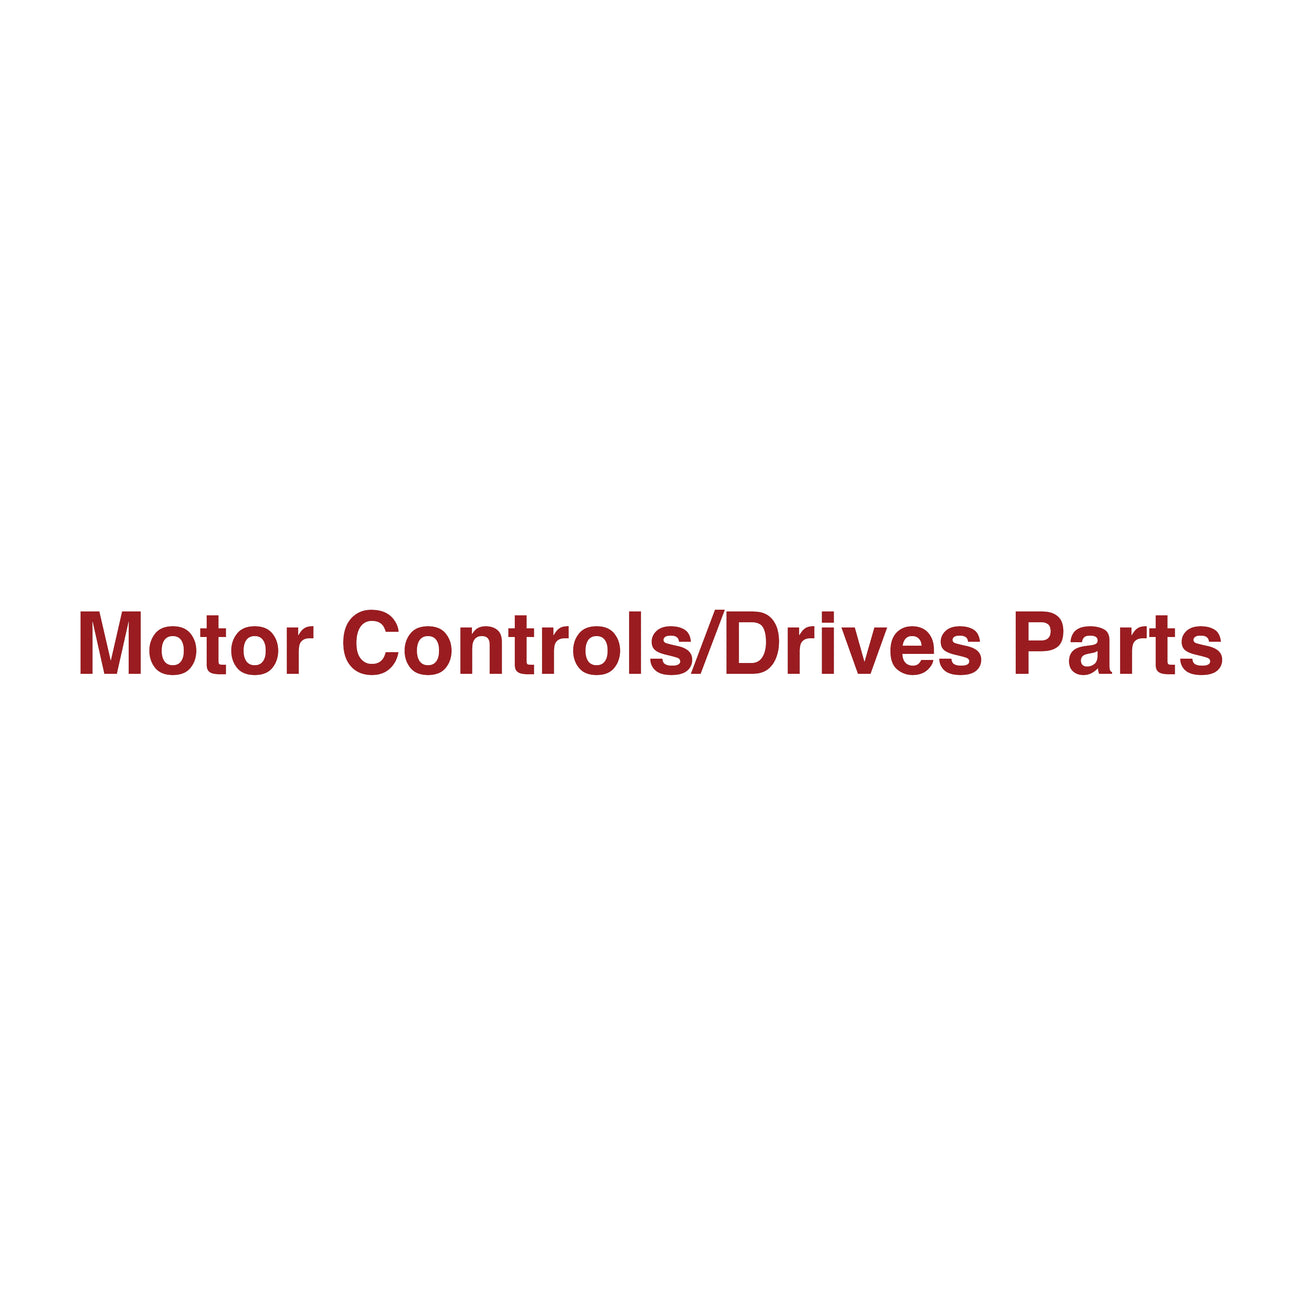 Motor Controls / Drives Parts